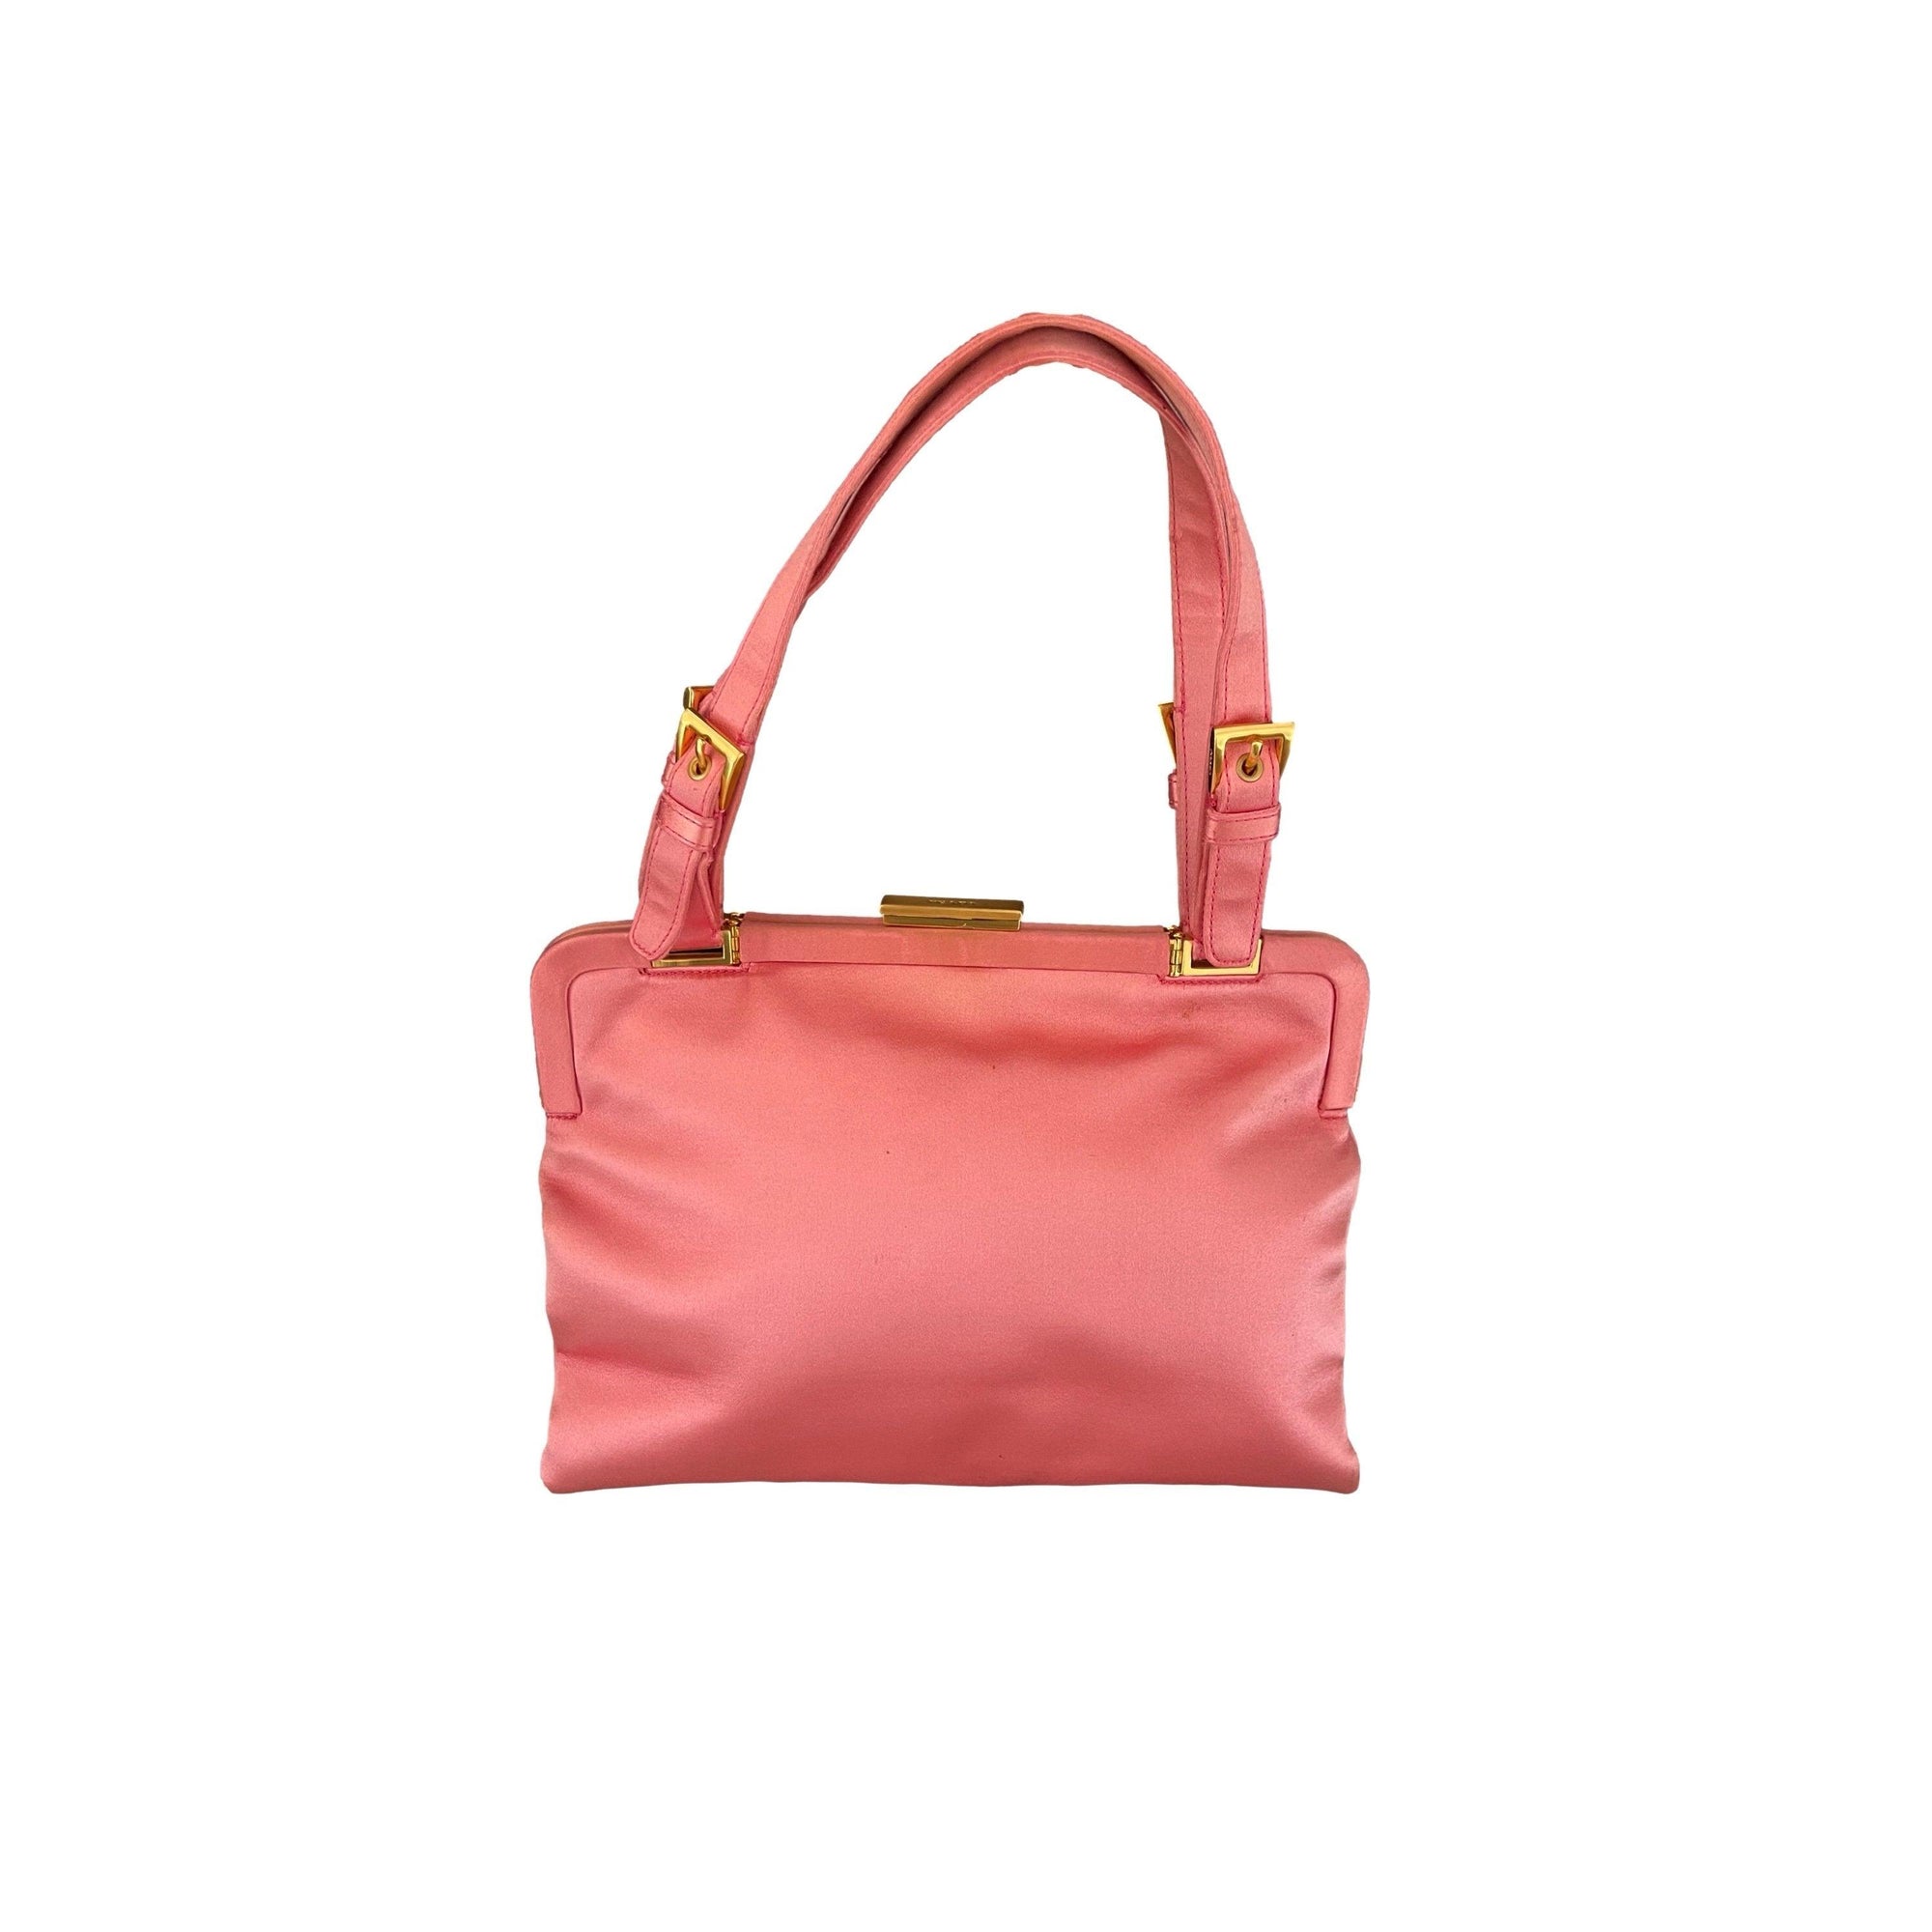 Prada Pink Satin Lock Bag - Handbags